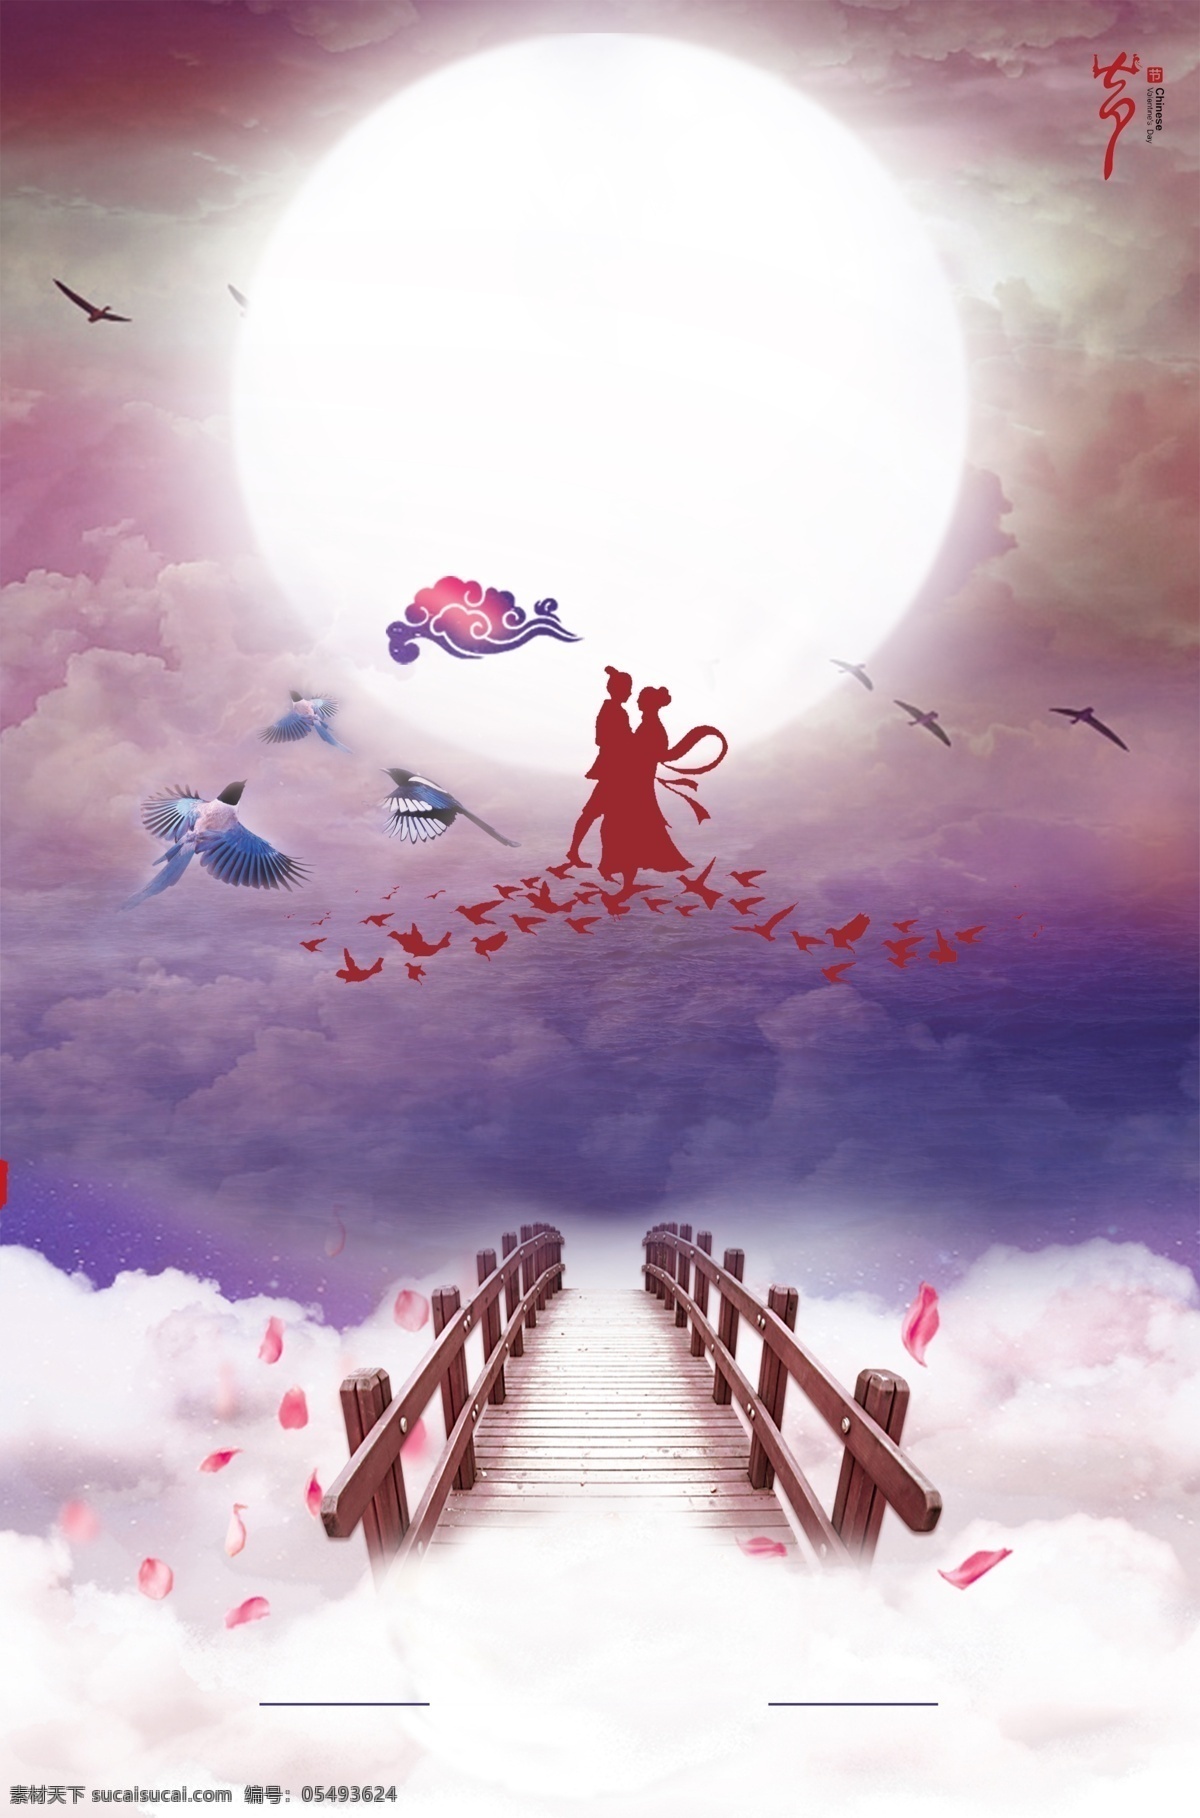 七夕 情人节 浪漫 海报 牛郎织女 喜鹊桥 相约七夕 中国情人节 月亮 中国传统节日